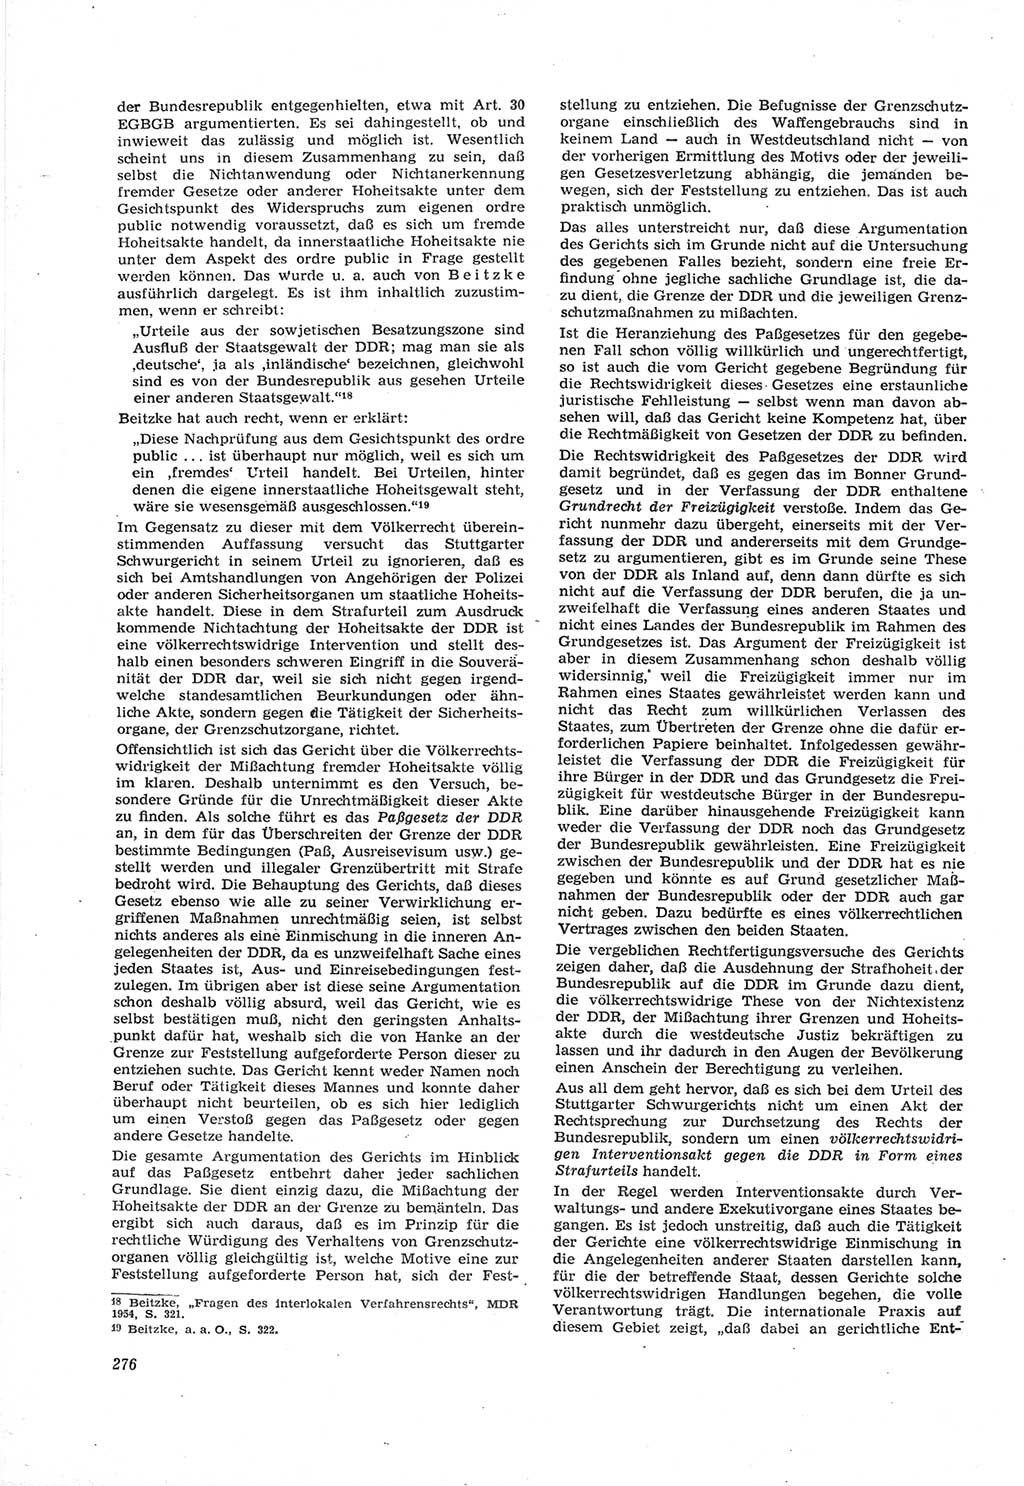 Neue Justiz (NJ), Zeitschrift für Recht und Rechtswissenschaft [Deutsche Demokratische Republik (DDR)], 18. Jahrgang 1964, Seite 276 (NJ DDR 1964, S. 276)